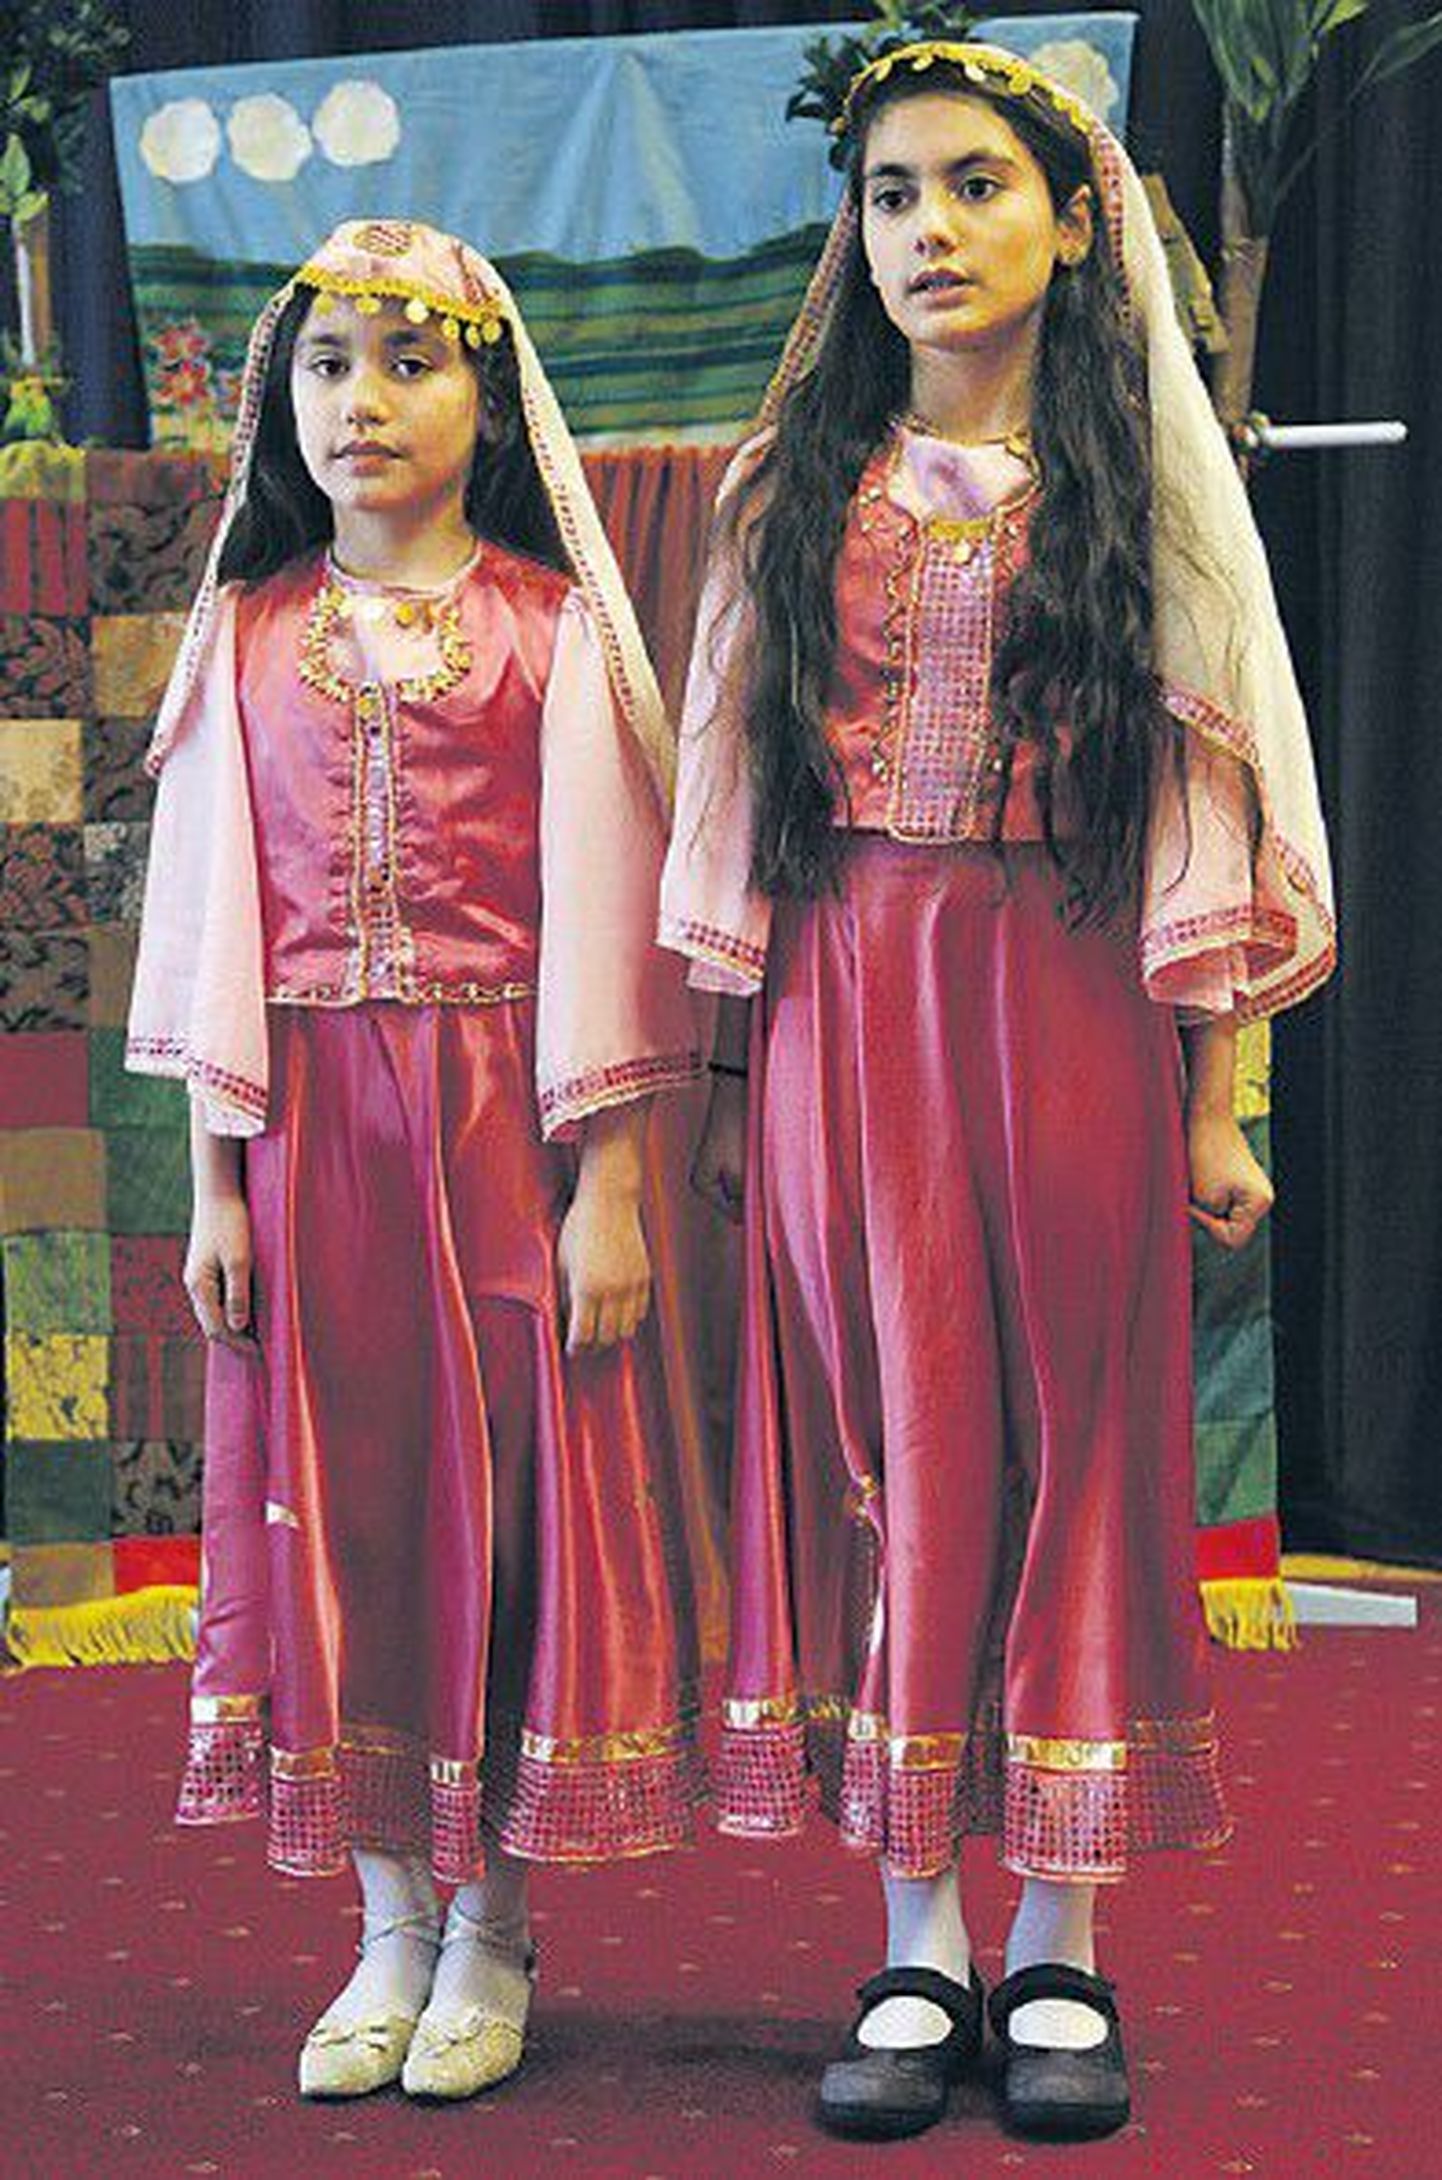 Под эгидой LAK столичный детский сад Vormsi организовал в 2010 году мероприятие, на котором русские и азербайджанские детки читали стихи на эстонском языке.